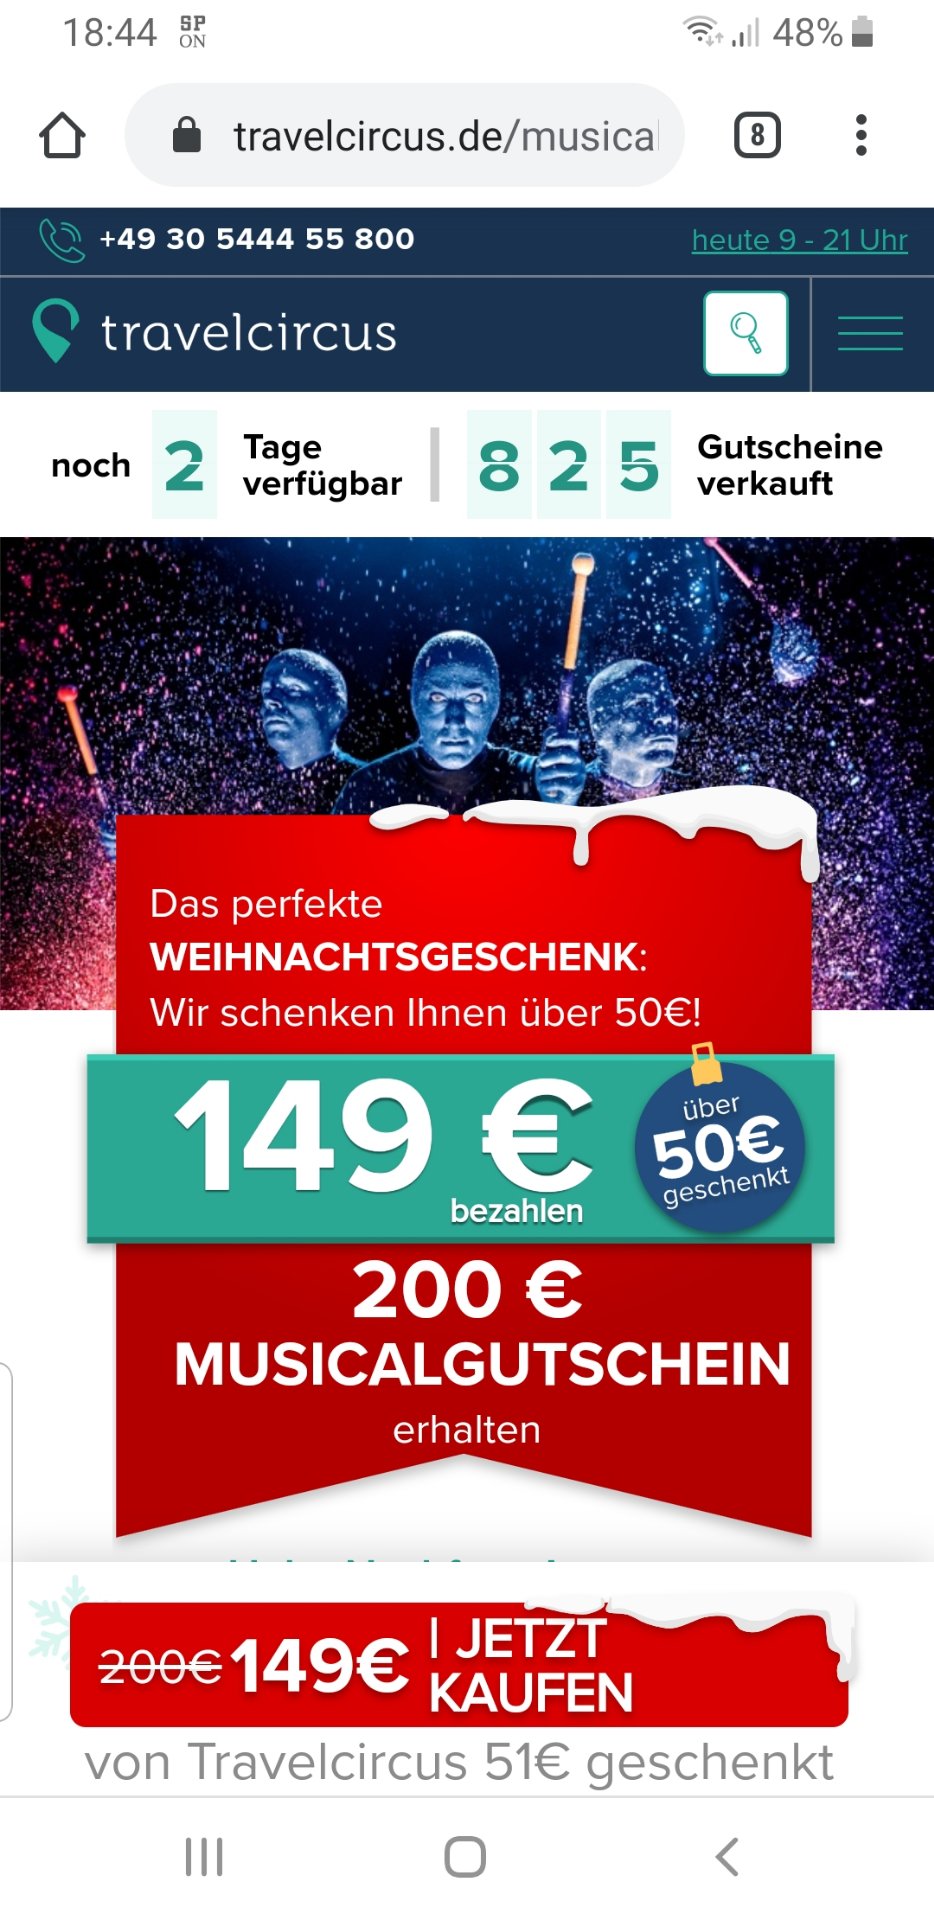 25 Sparen Bei Travelcircus 0 Musical Gutschein Fur 149